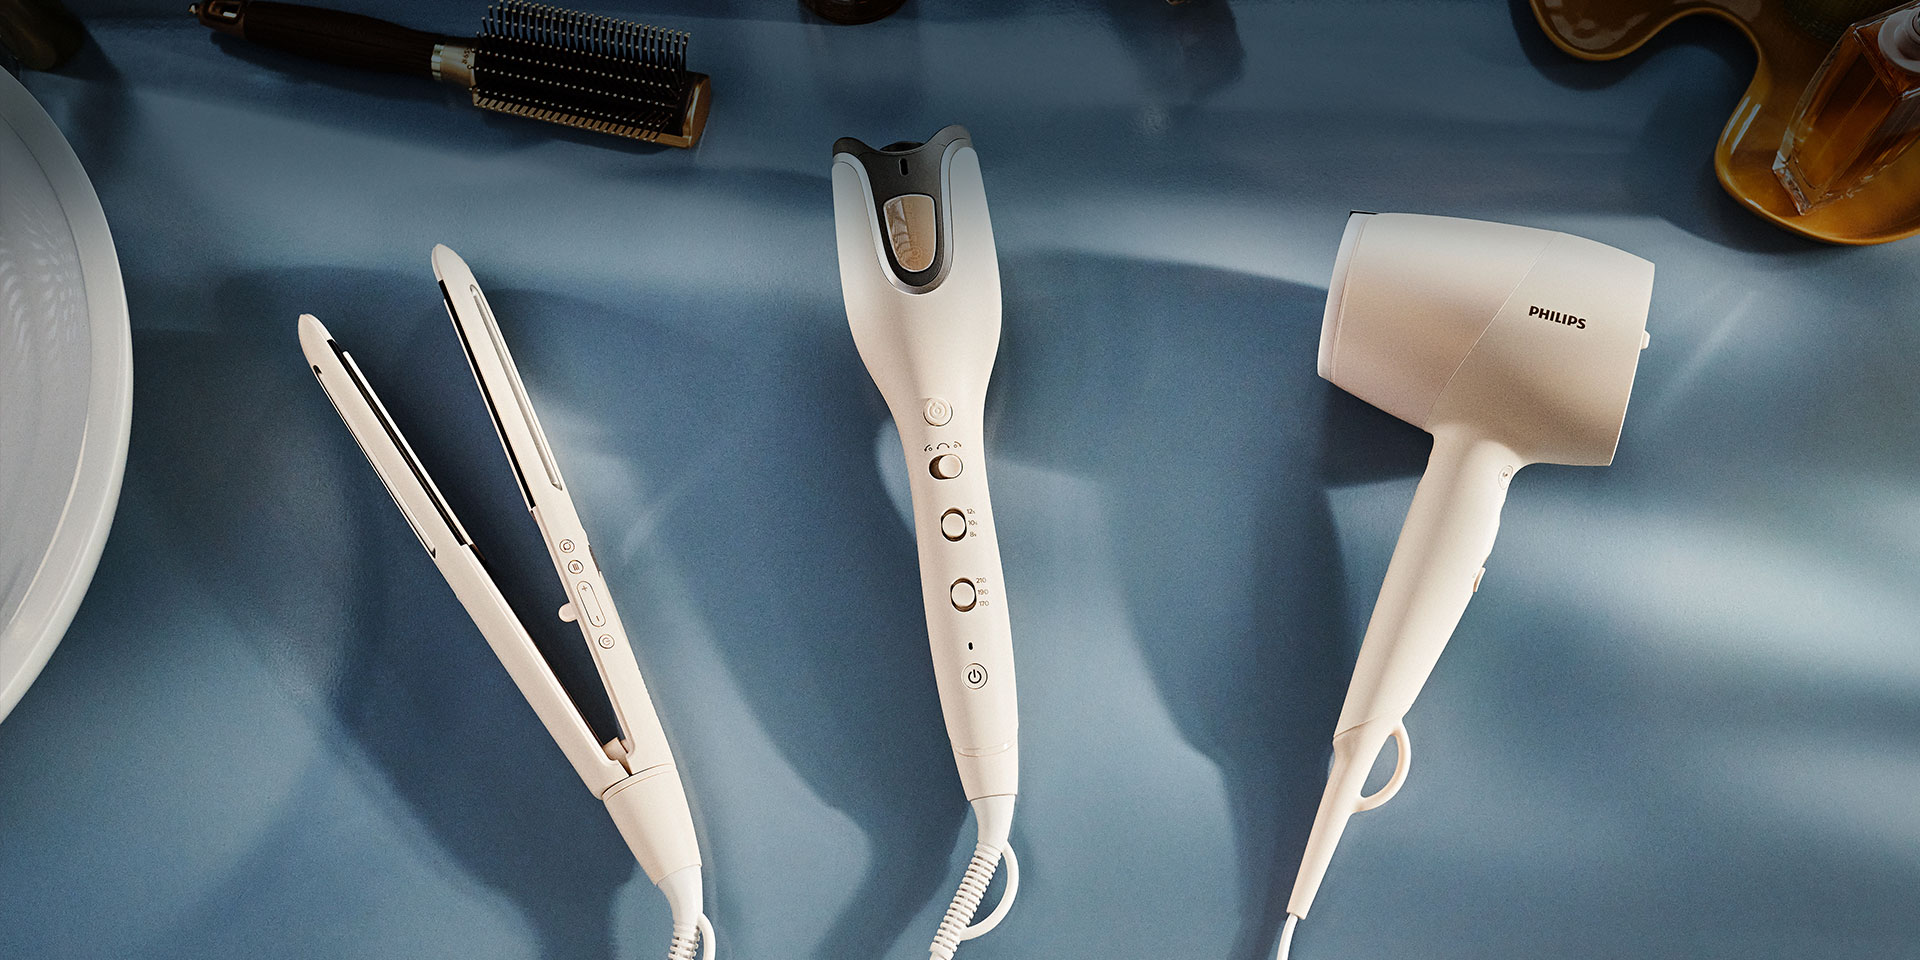 Pozostałe inteligentne urządzenia do pielęgnacji i stylizacji włosów z serii Philips SenseIQ: suszarka i lokówka automatyczna.